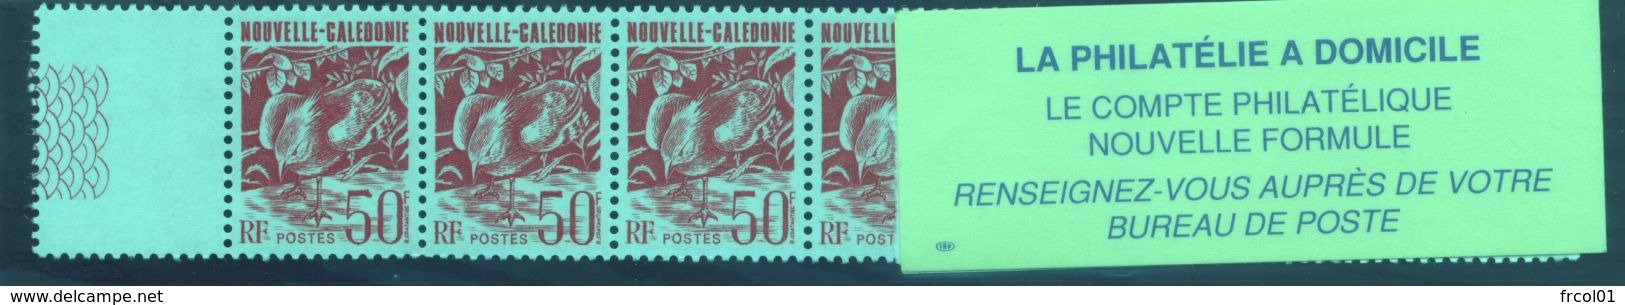 Nouvelle Calédonie, Yvert Carnet 588, Scott Booklet 599, MNH - Booklets